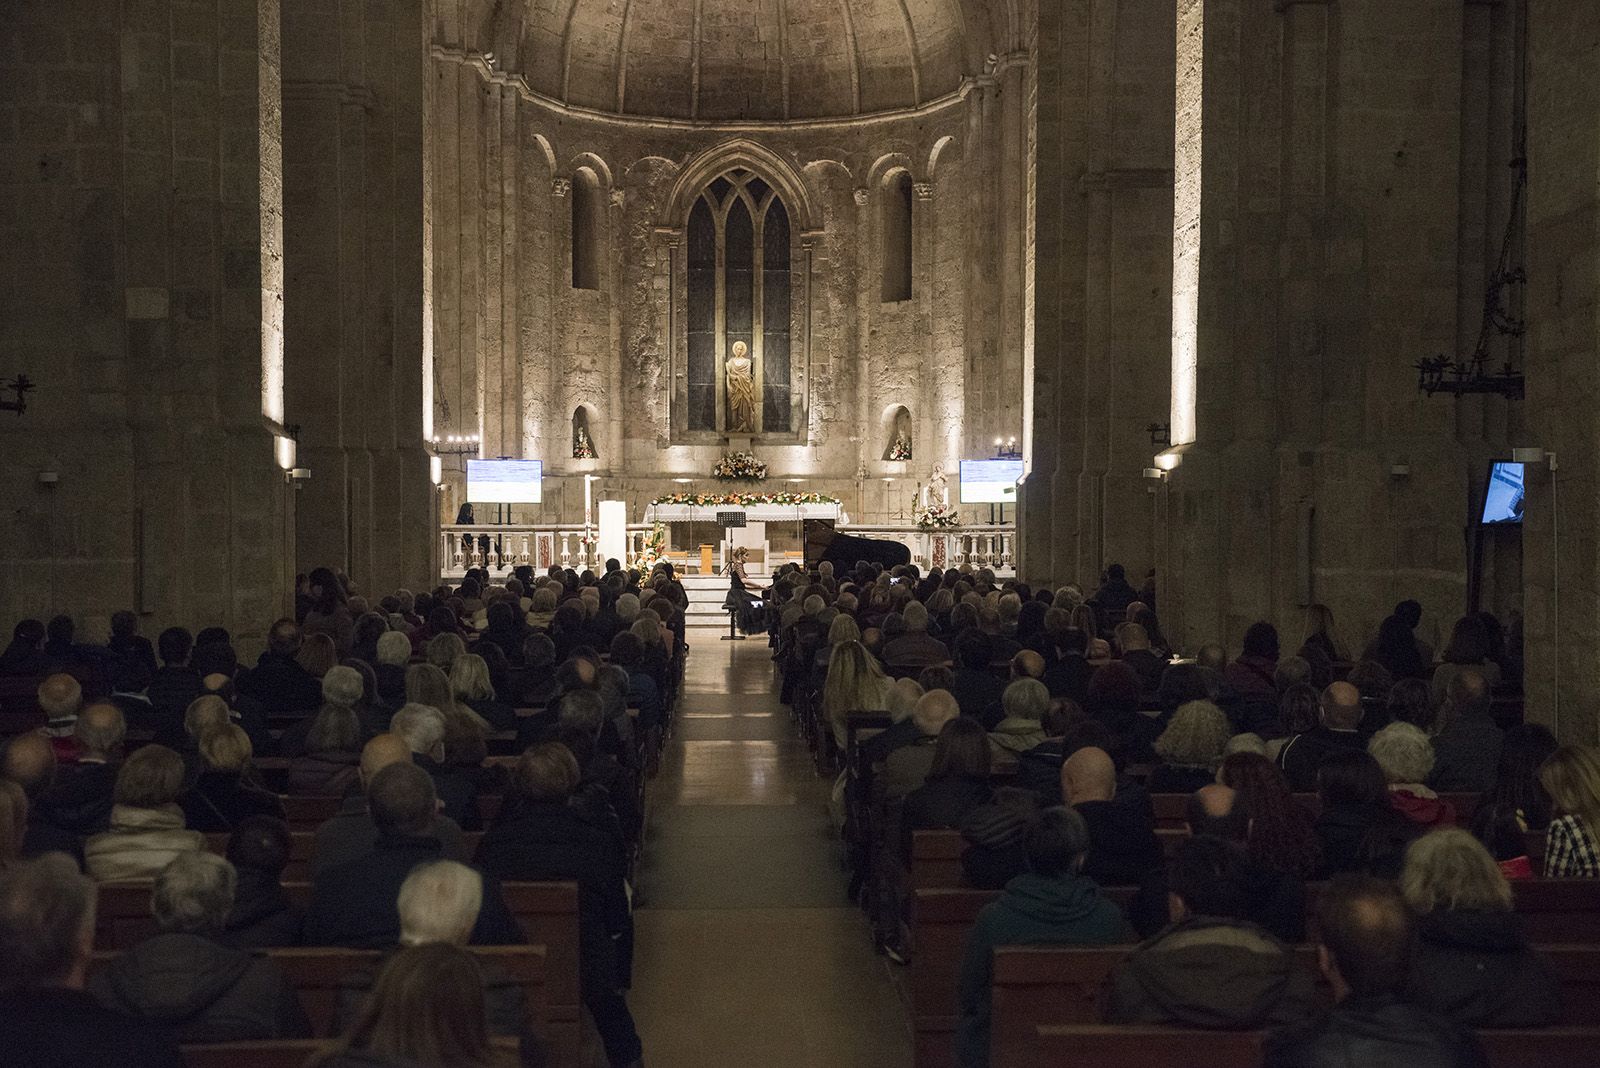 Concert de Sant Jordi: “Música per la pau a Ucraïna” a l'Església del Monestir. FOTO: Bernat Millet.